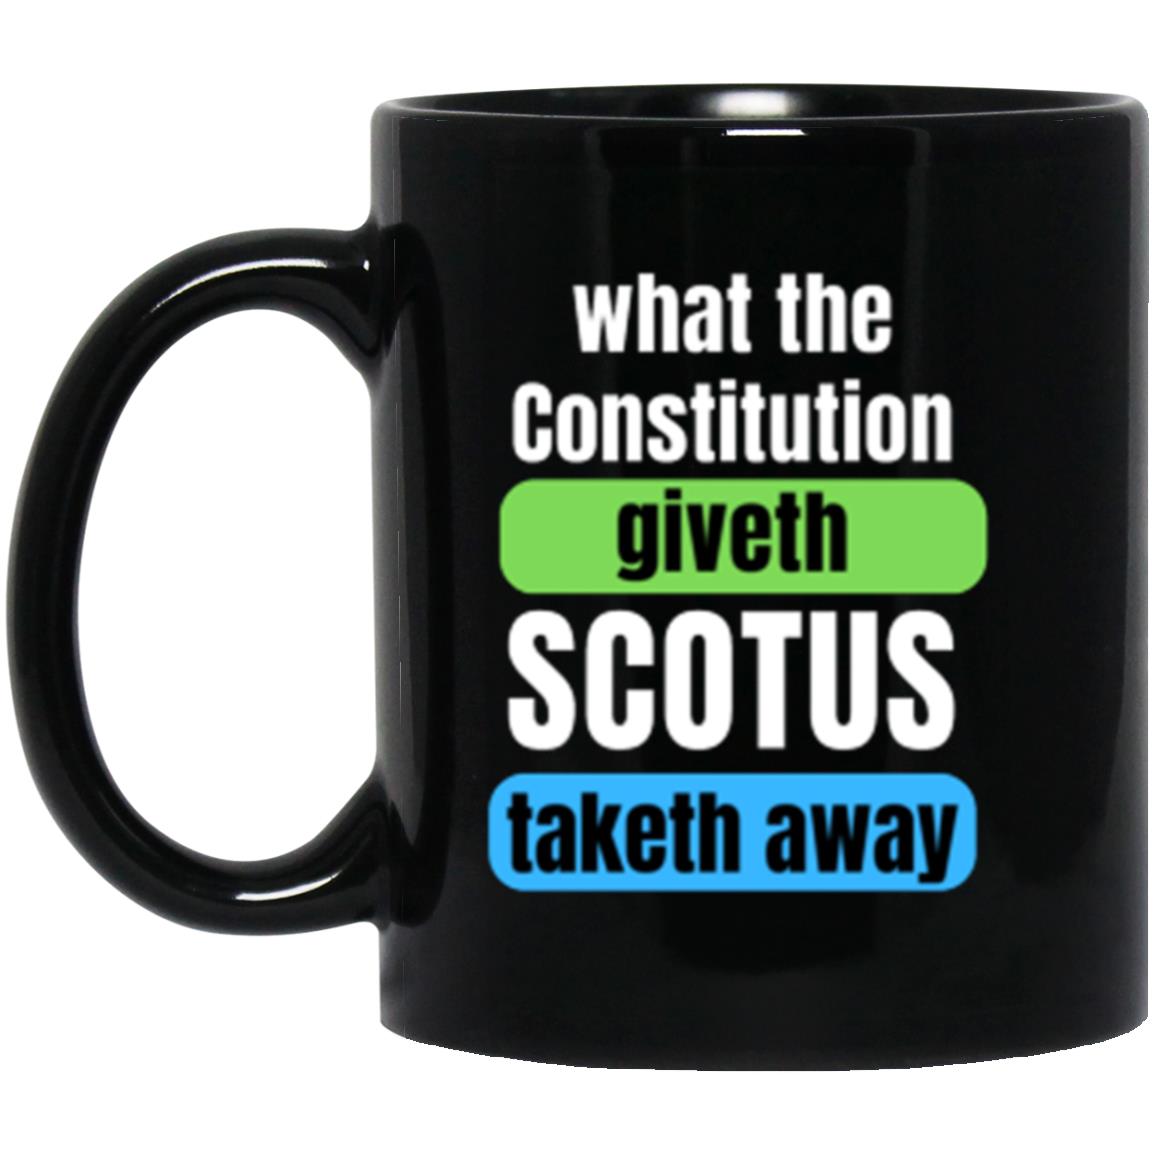 SCOTUS Taketh Away | 11 oz. Black Mug